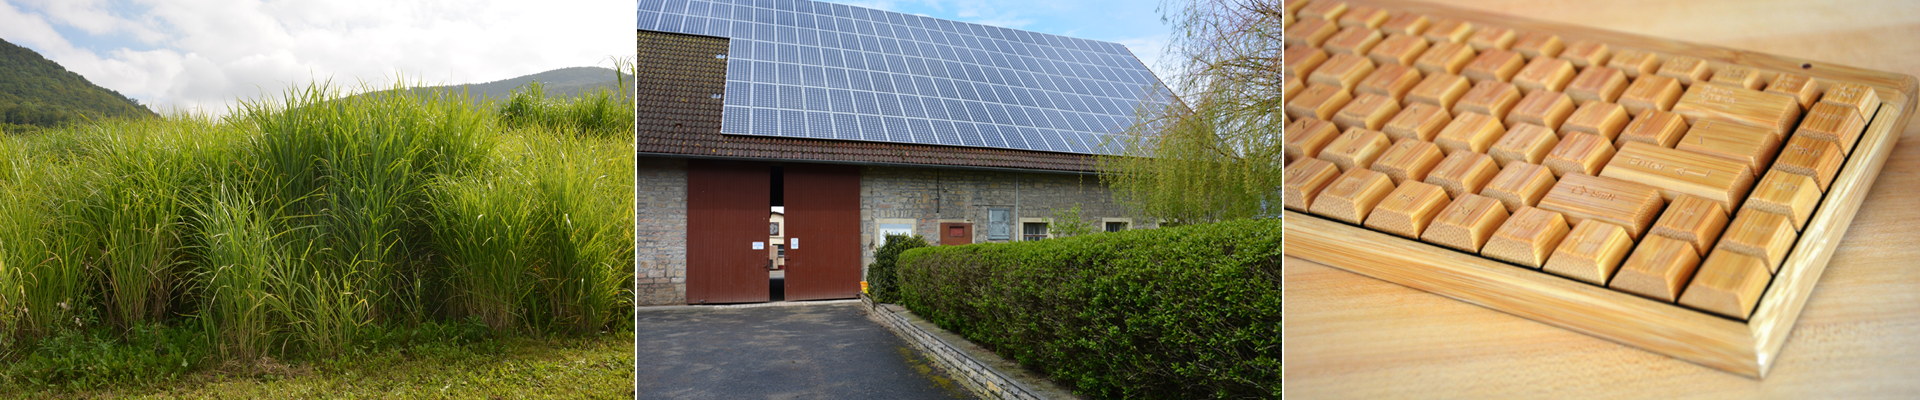 C.A.R.M.E.N.-WebSeminar: „Wärmepumpe trifft Photovoltaik – Heizen mit Erneuerbaren Energien”